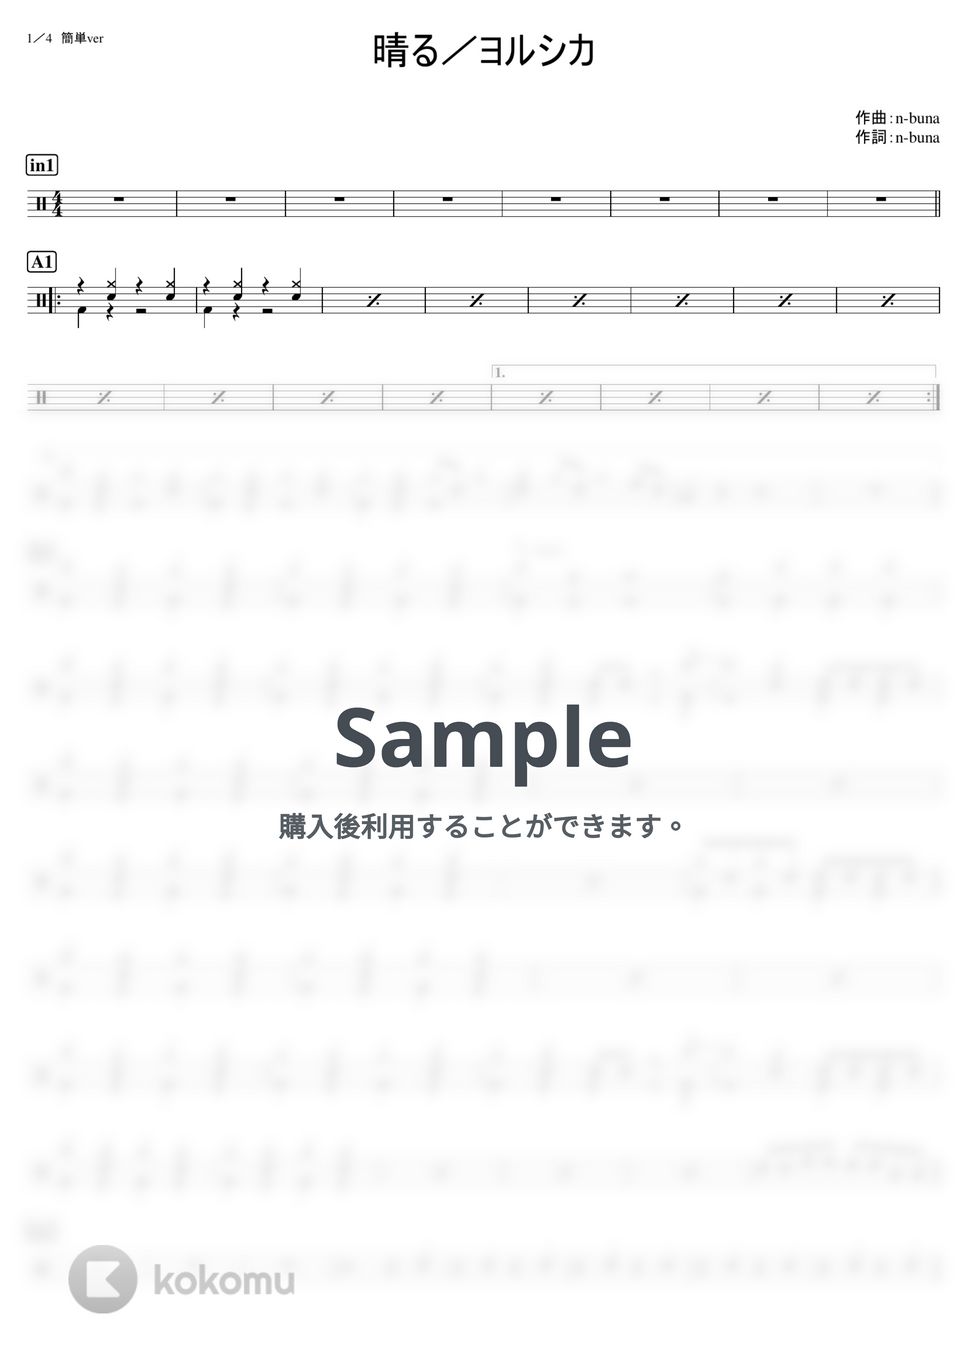 ヨルシカ - 晴る (初級) by kamishinjo-drum-school